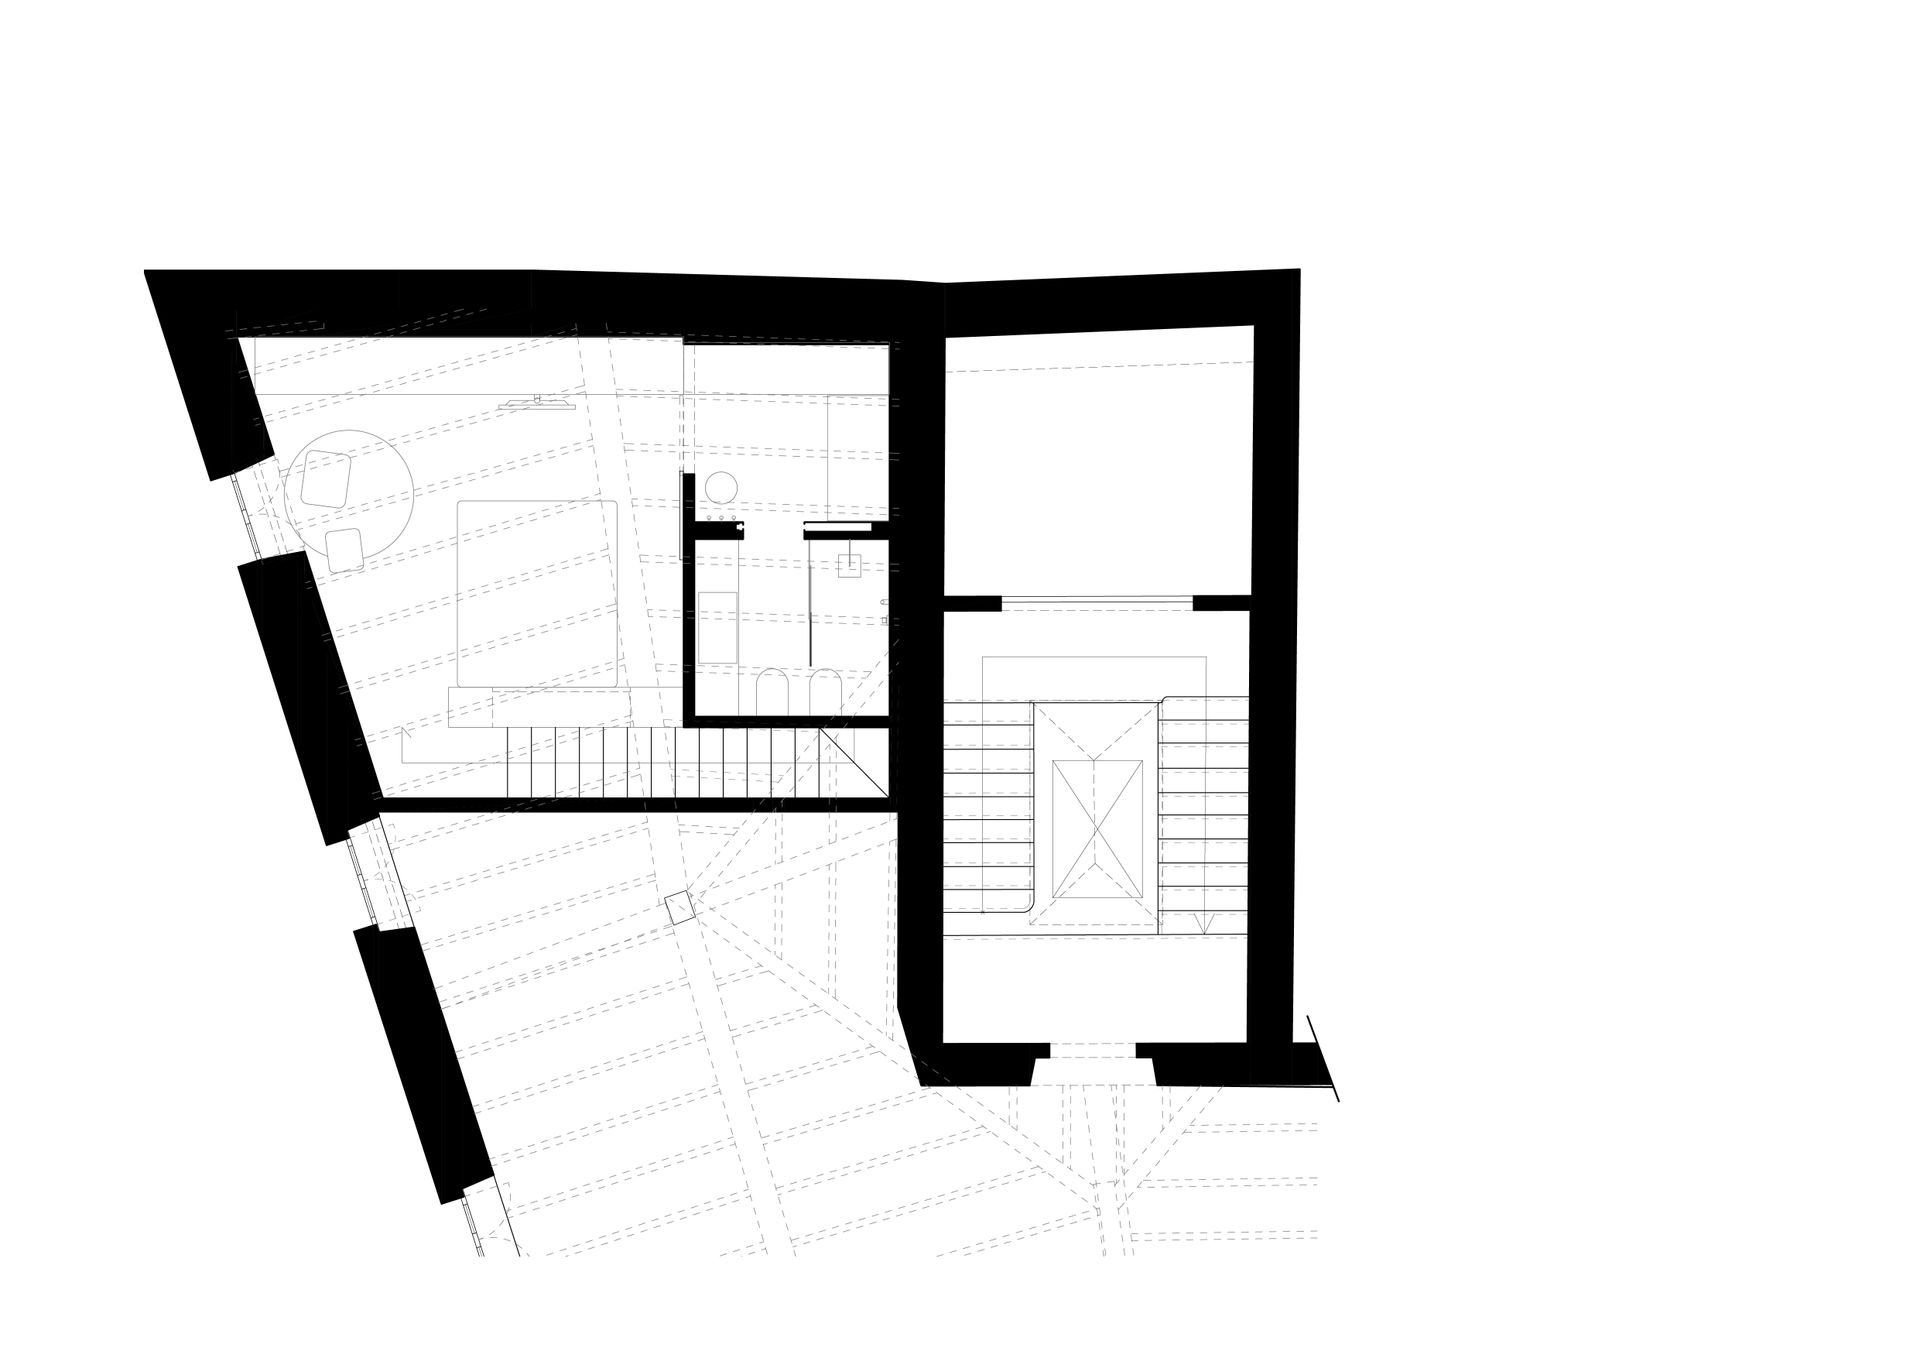 Progetto interior design, ristrutturazione appartamento attico camera da letto Bergamo, Milano, Lago di Como, Londra, New York, Parigi. Officina Magisafi architettura design - pianta